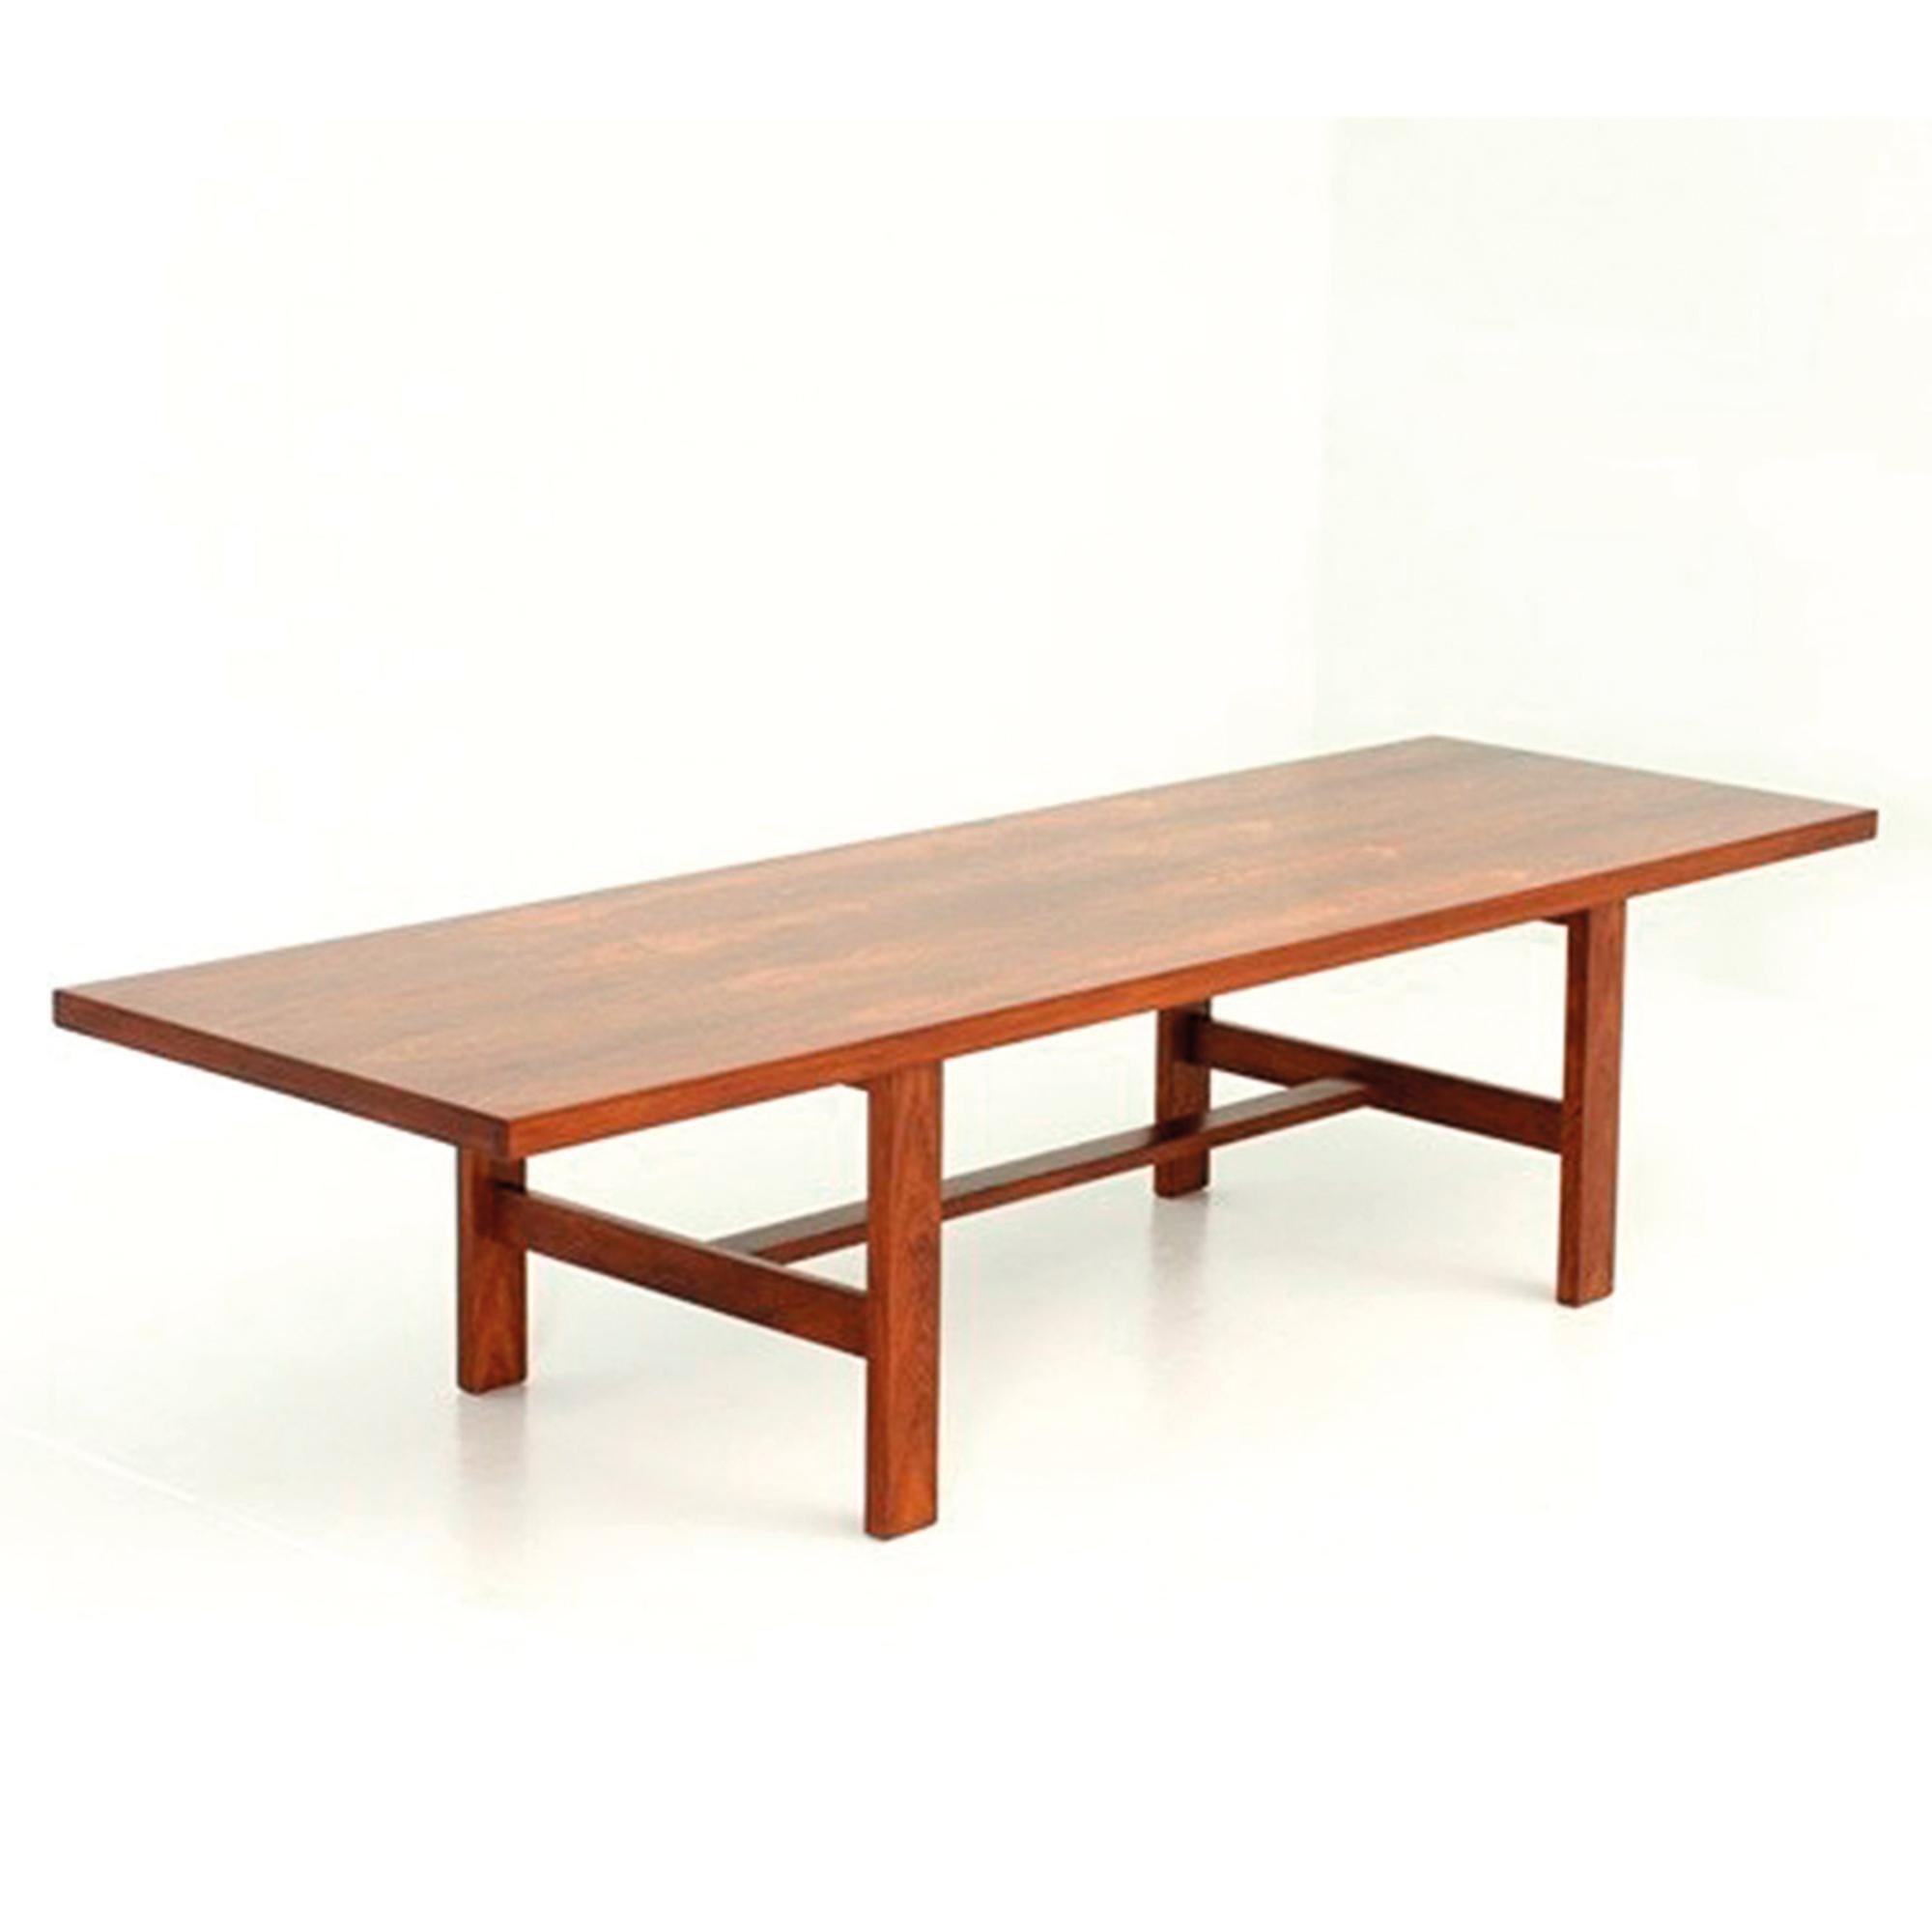 El diseño limpio y los materiales de calidad caracterizan esta mesa de salón. El palisandro tiene un notable veteado contrastado que da calidez a esta mesa de proporciones generosas, que quedará ideal delante de un sofá y uno o dos pares de